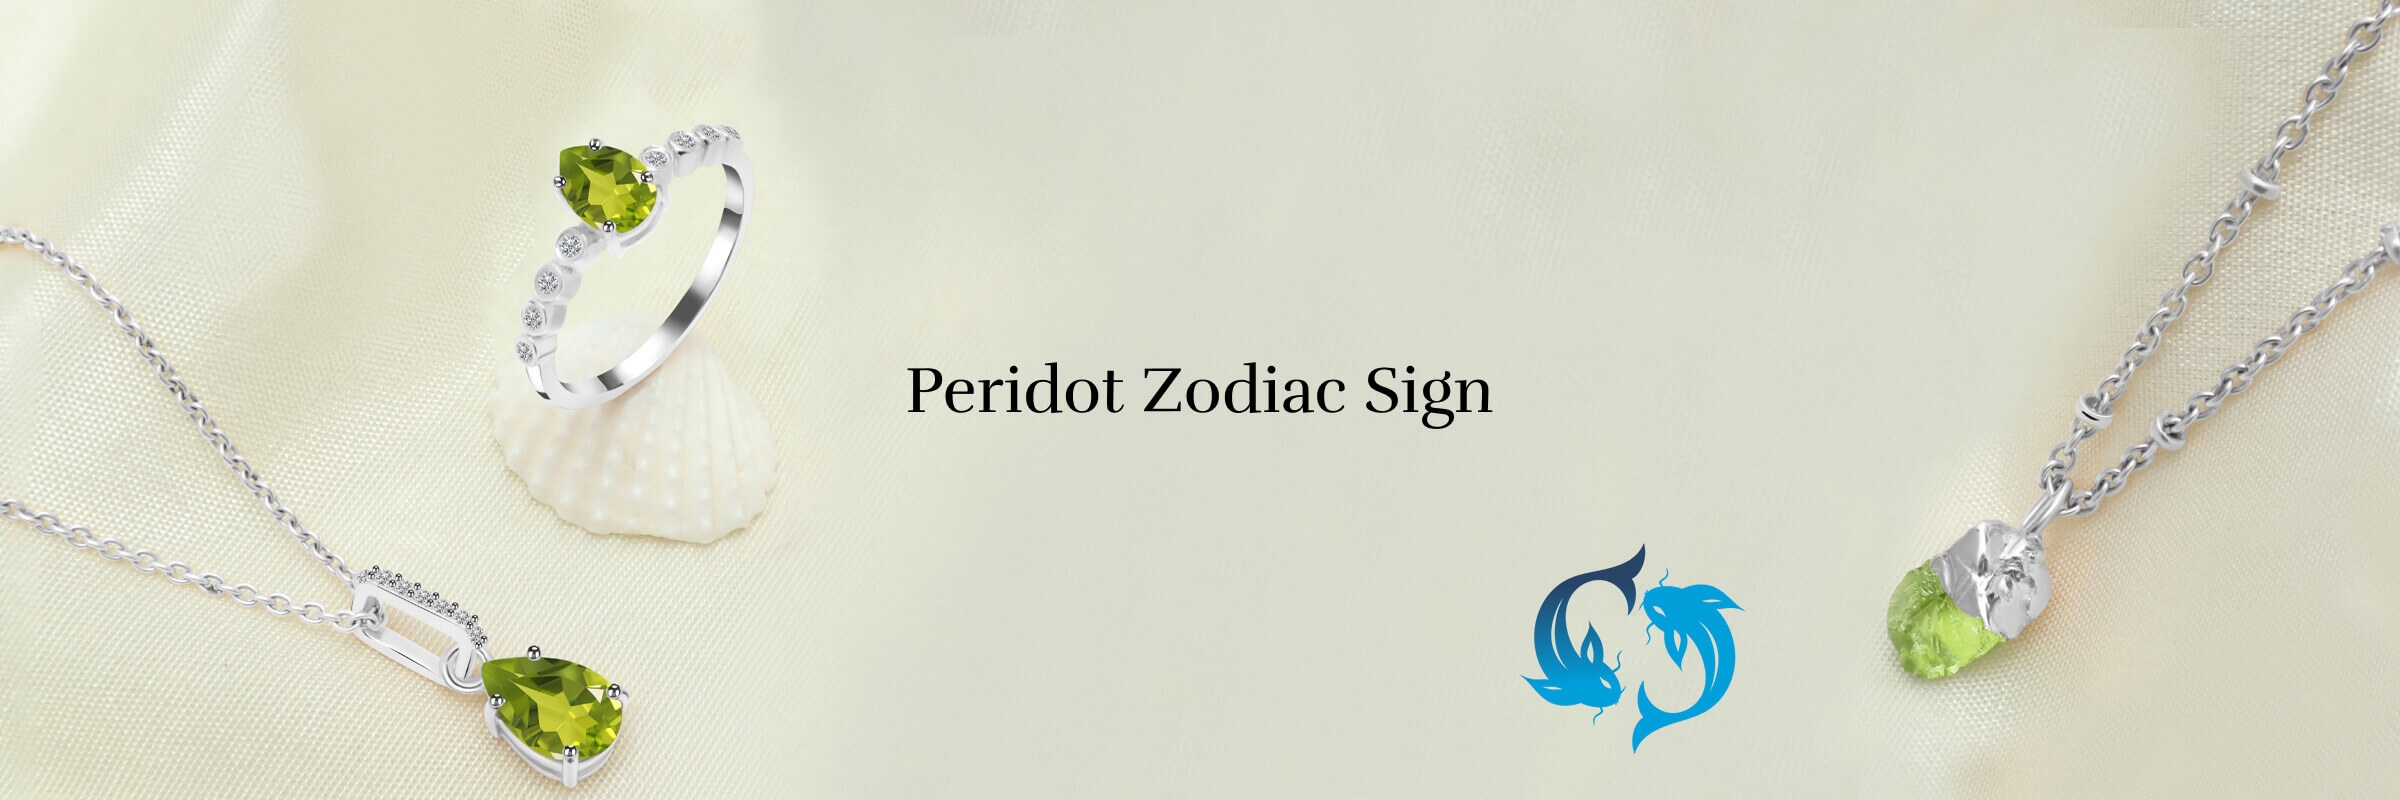 peridot zodiac sign